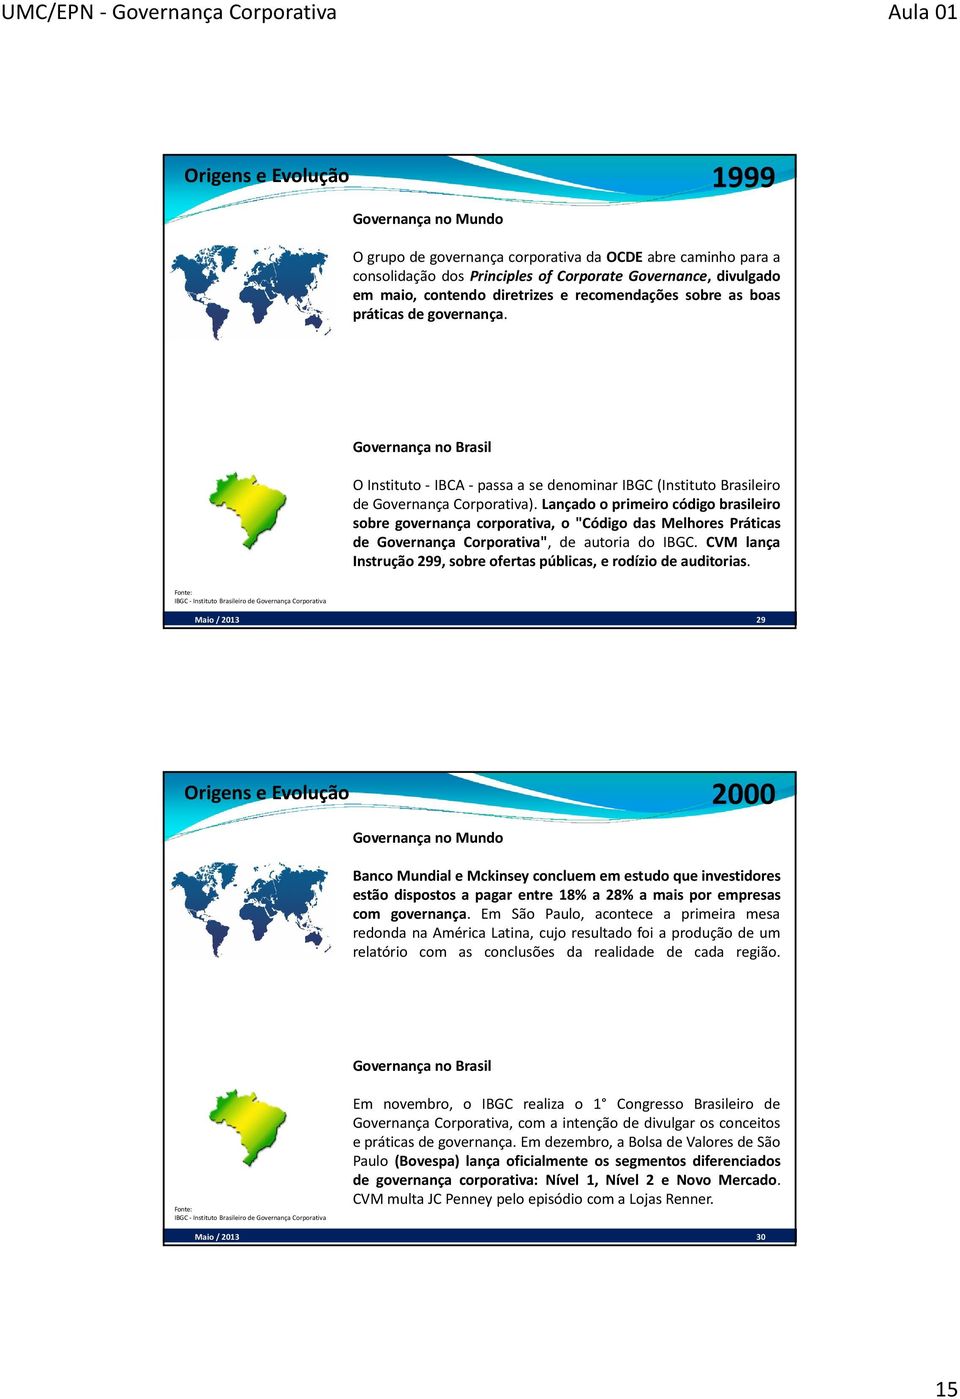 Lançado o primeiro código brasileiro sobre governança corporativa, o "Código das Melhores Práticas de Governança Corporativa", de autoria do IBGC.